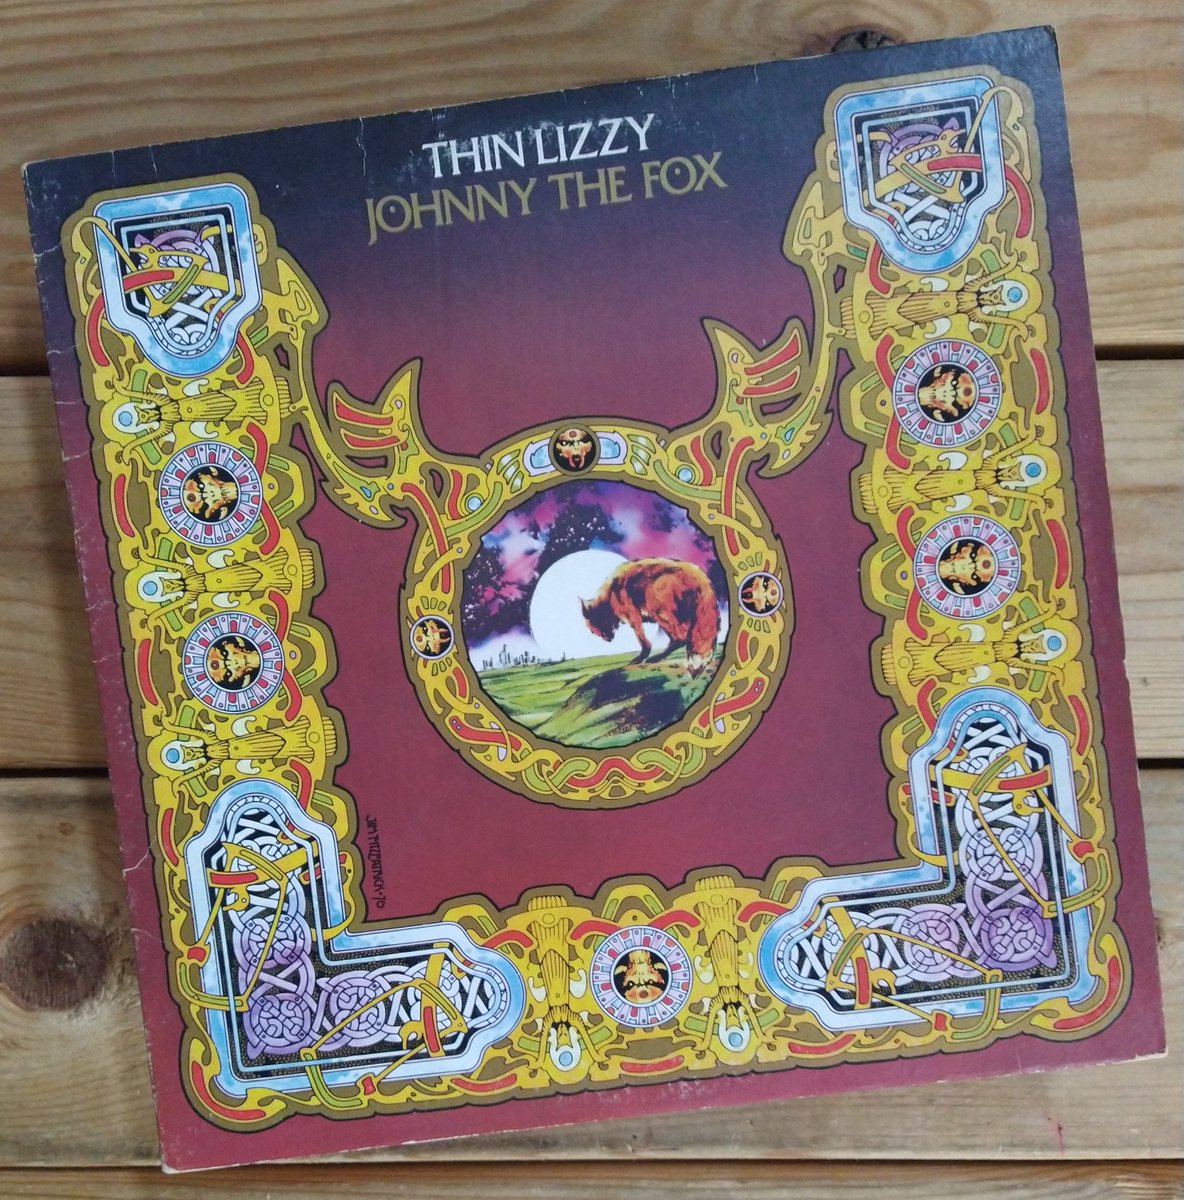 Spinning - #ThinLizzy #NowPlaying #vinylcommunity #vinylrecords